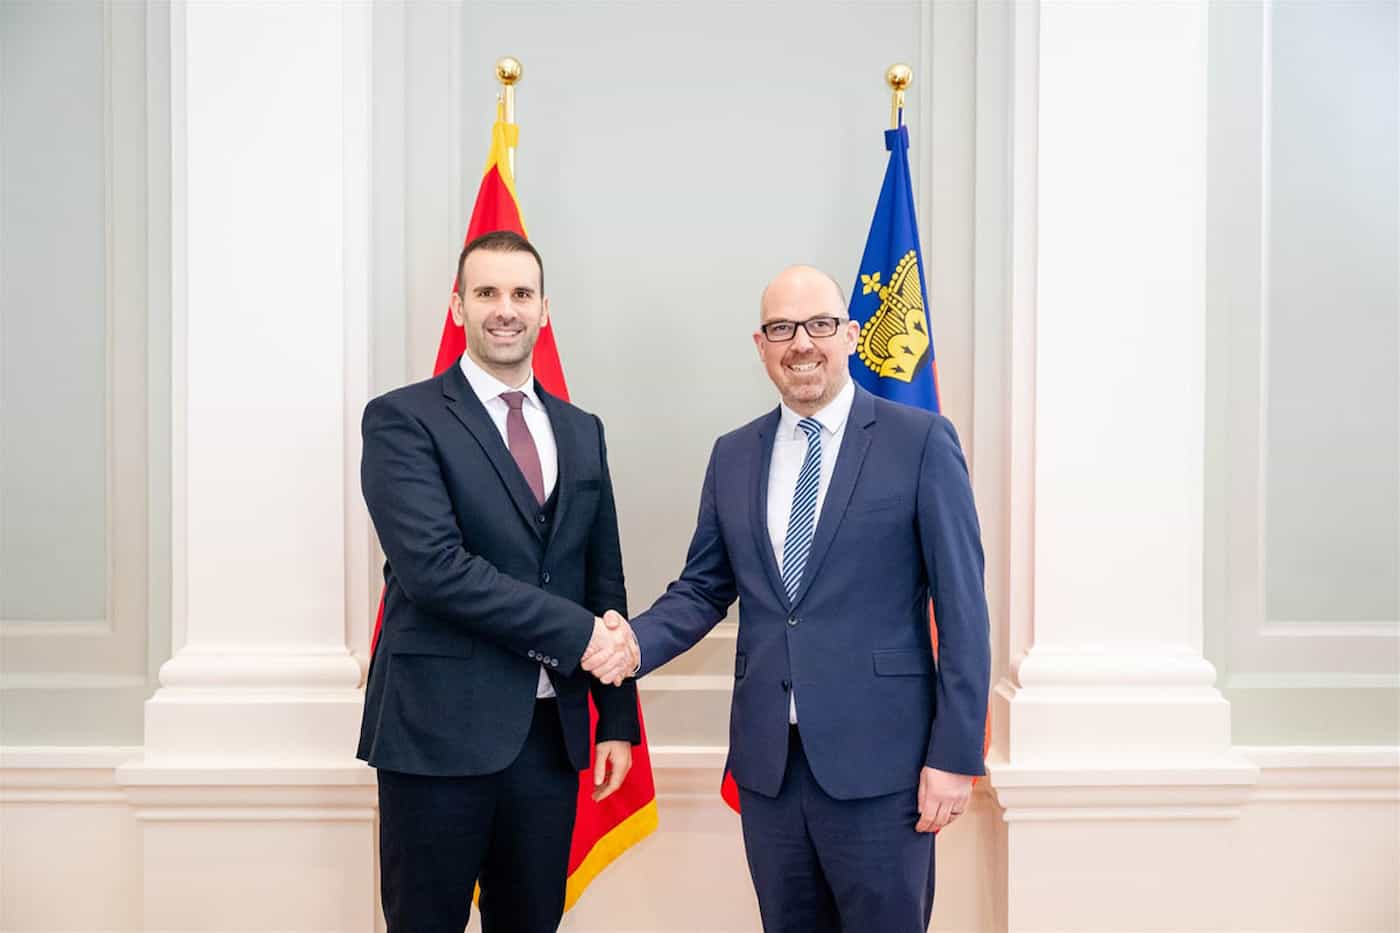 Premierminister Milojko Spajić und Regierungschef Daniel Risch bei der offiziellen Begrüssung im Regierungsgebäude.